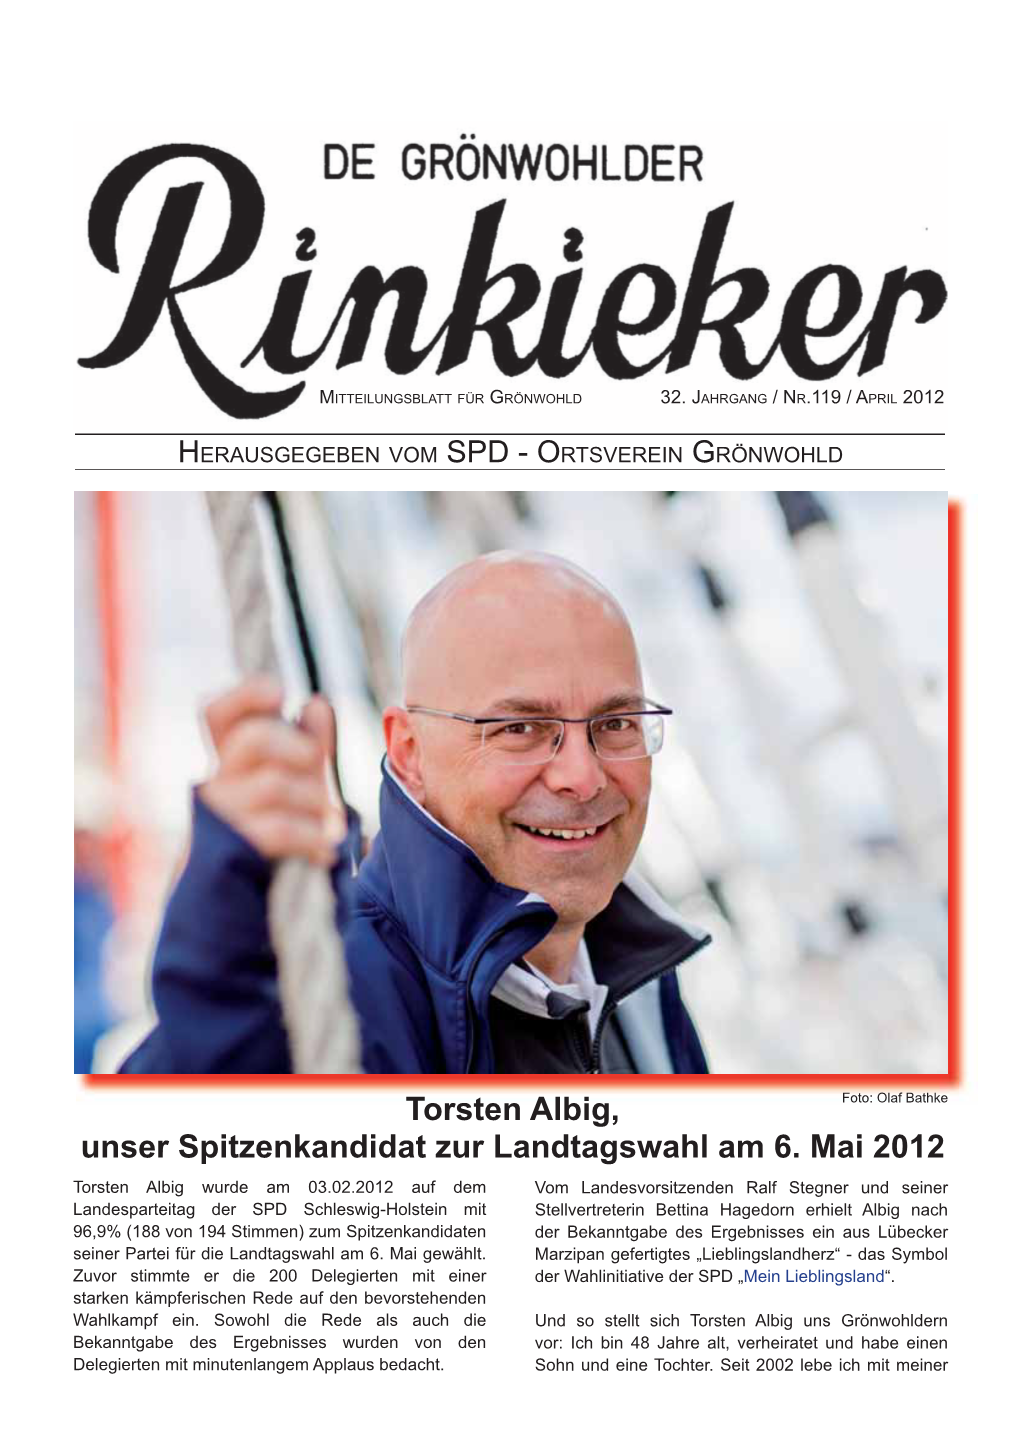 Torsten Albig, Unser Spitzenkandidat Zur Landtagswahl Am 6. Mai 2012